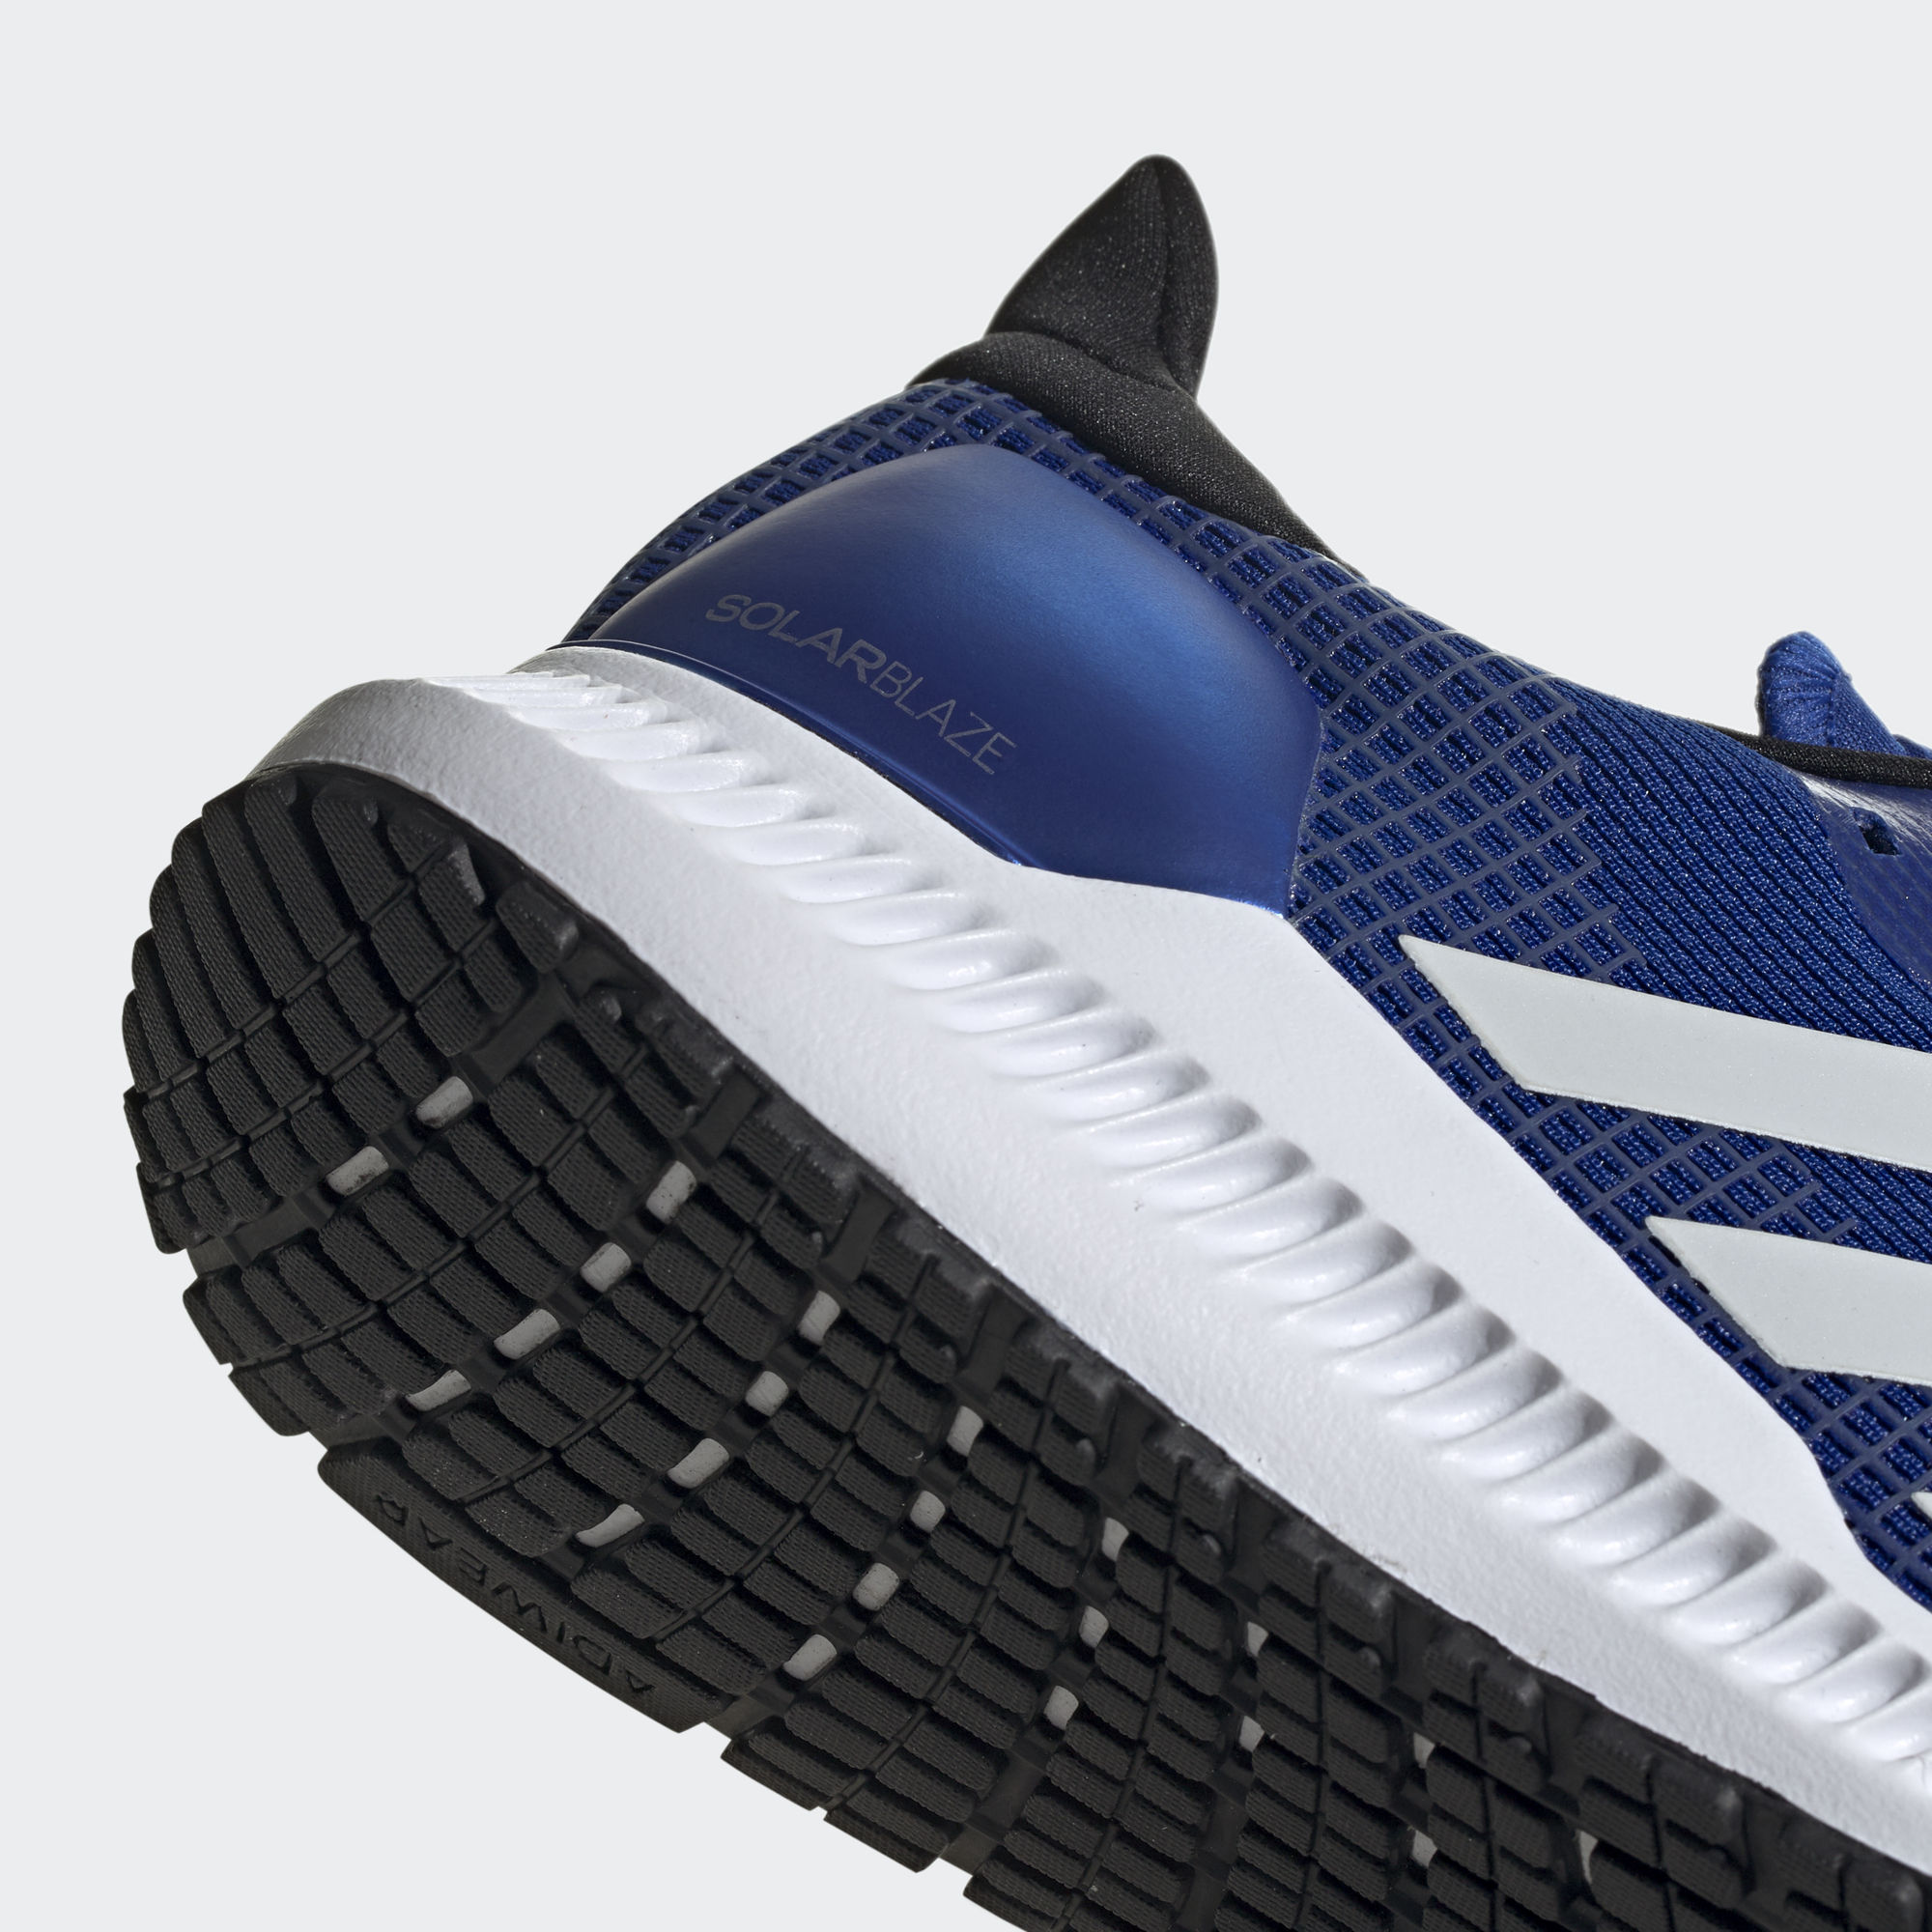 Becks clérigo Retencion SOLAR BLAZE 跑鞋- 藍色| 男子| adidas(愛迪達)香港官方網上商店